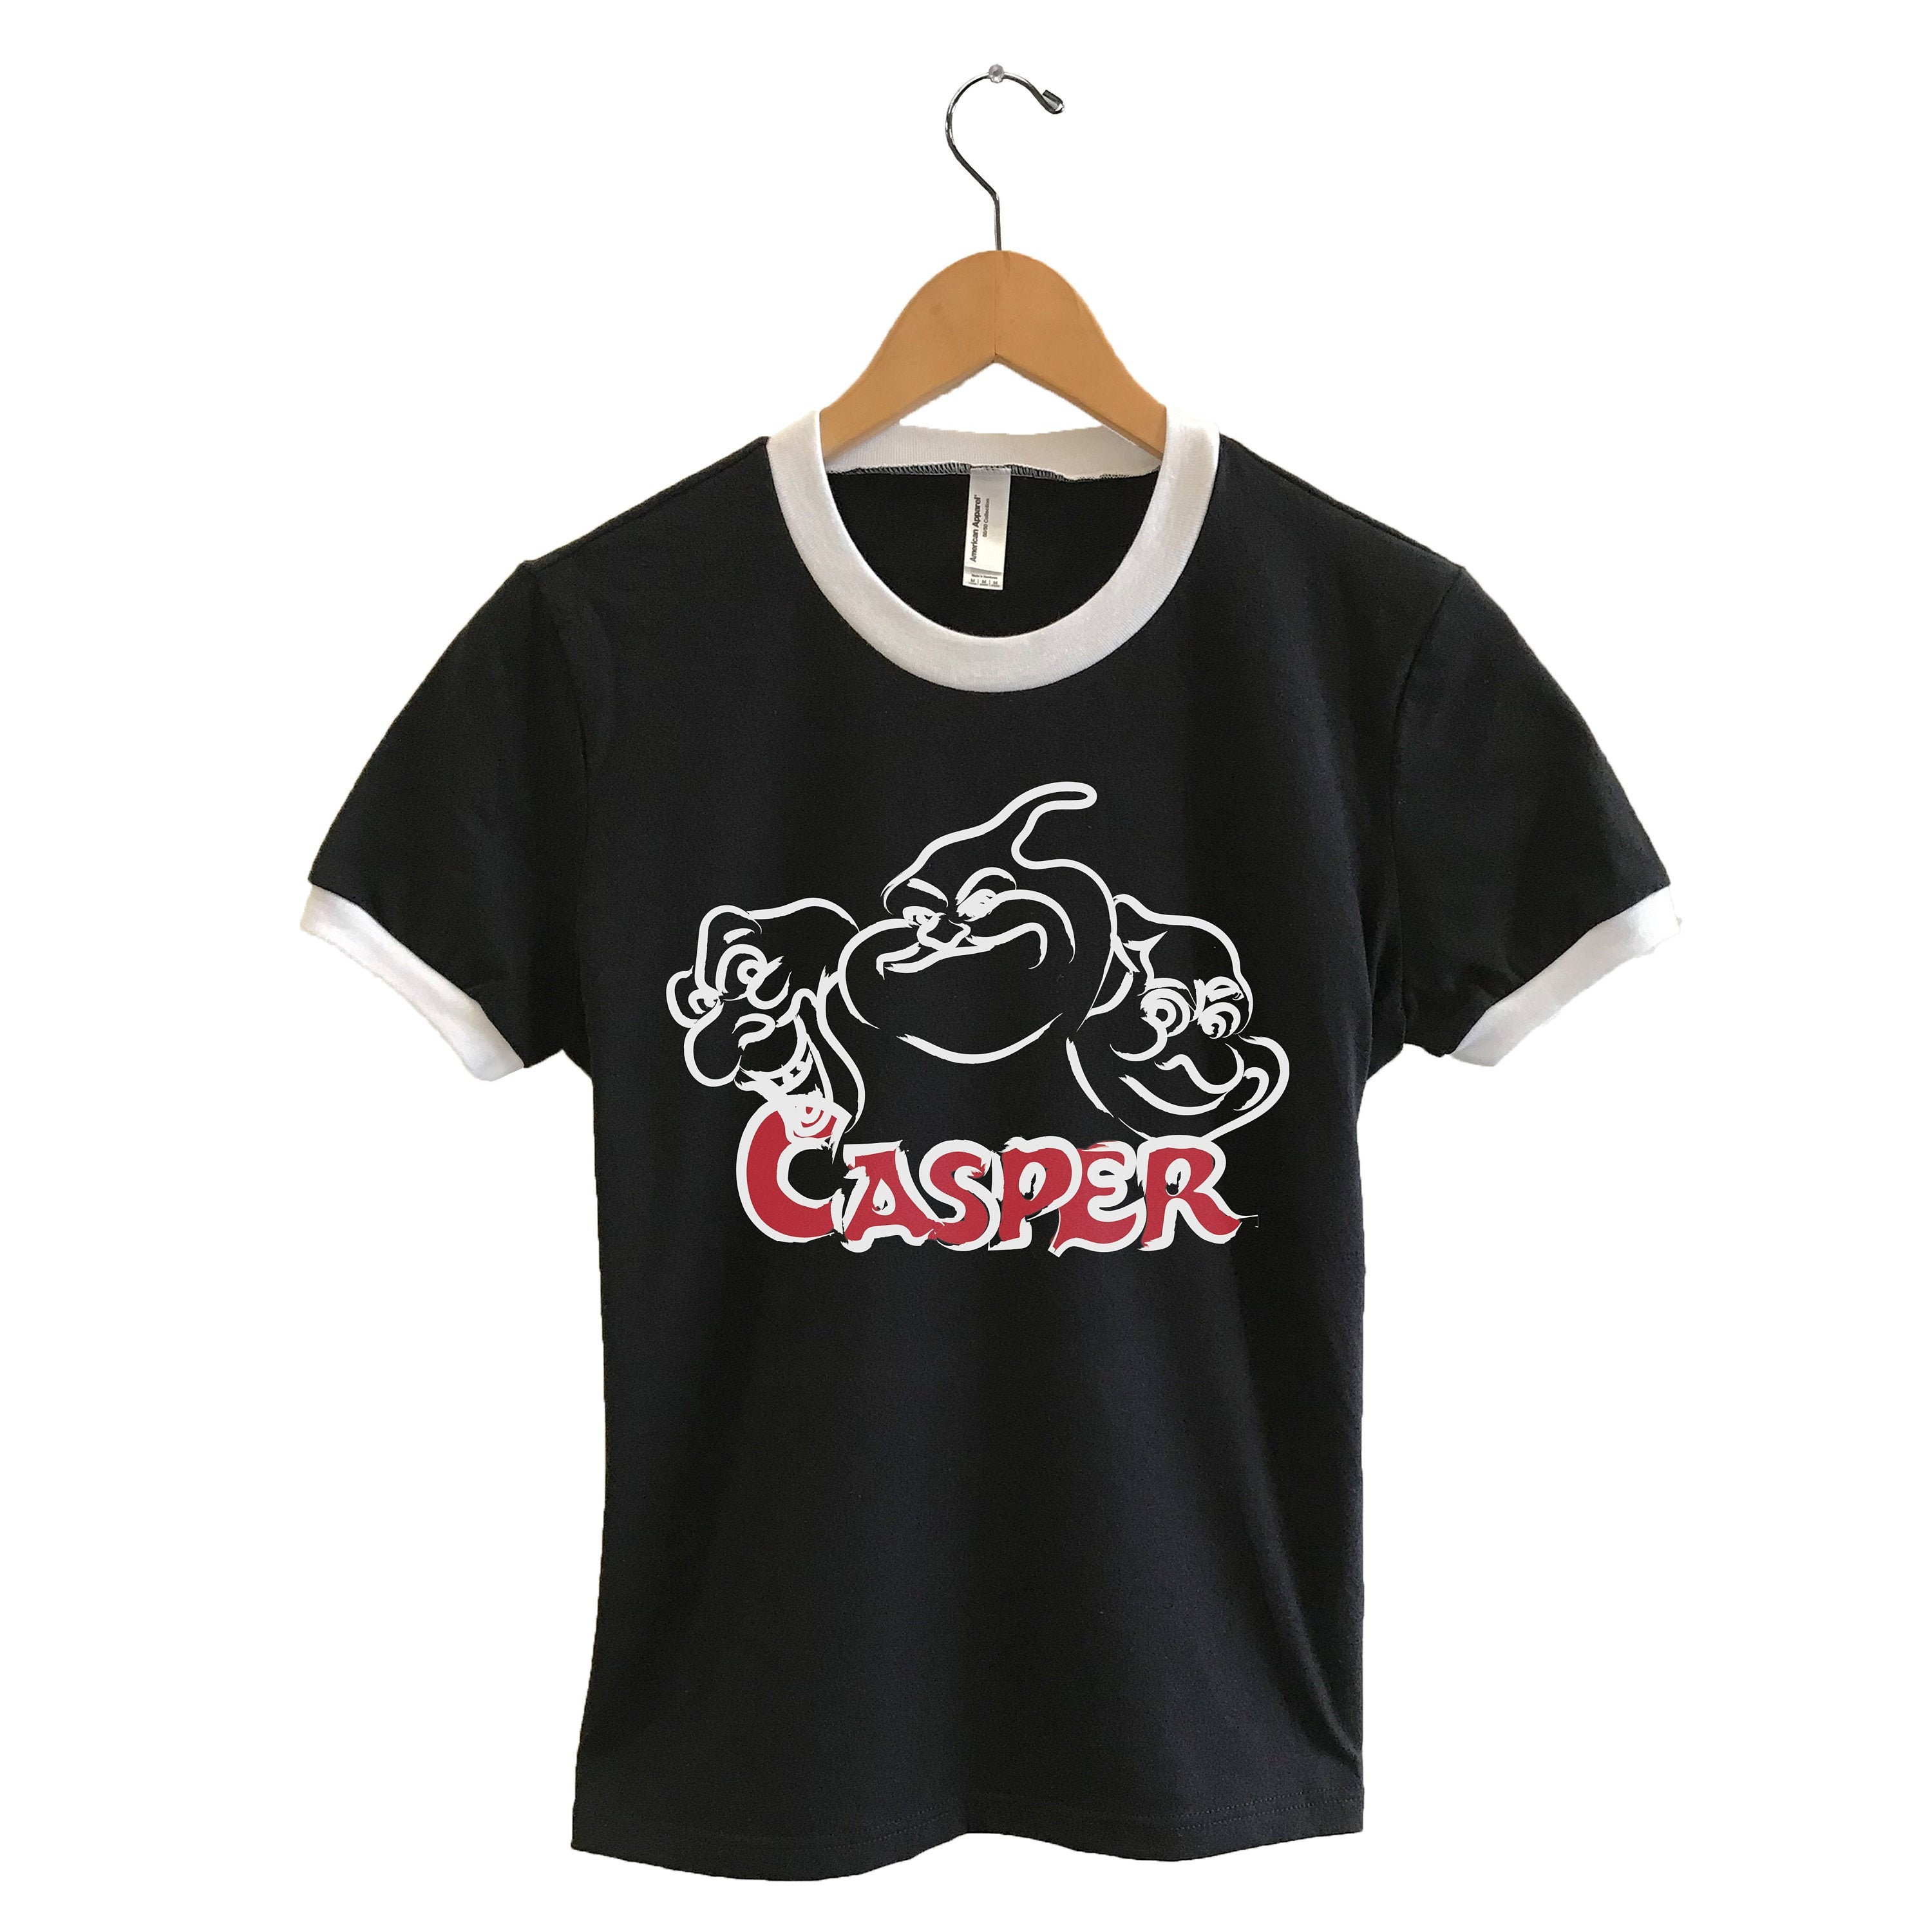 Casper Women Ringer T-shirt Casper Friendly Ghost -